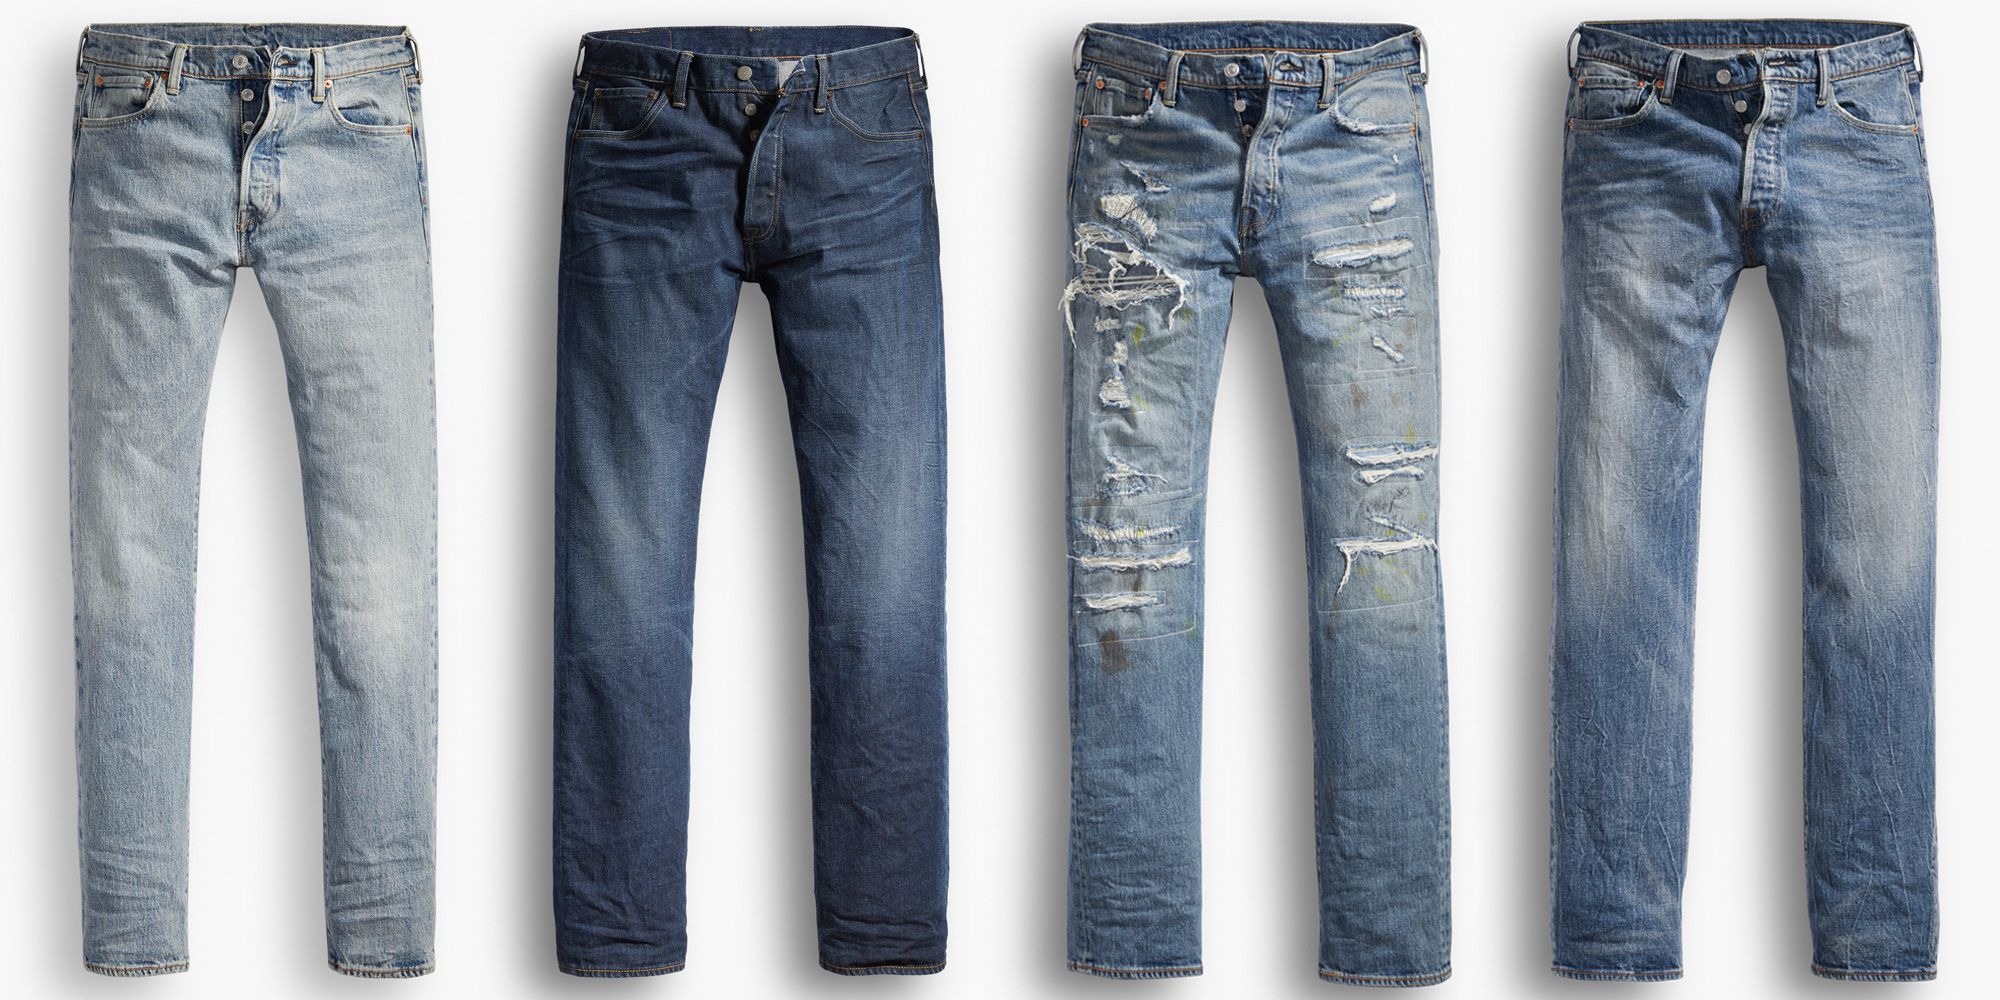 do levi jeans shrink after washing